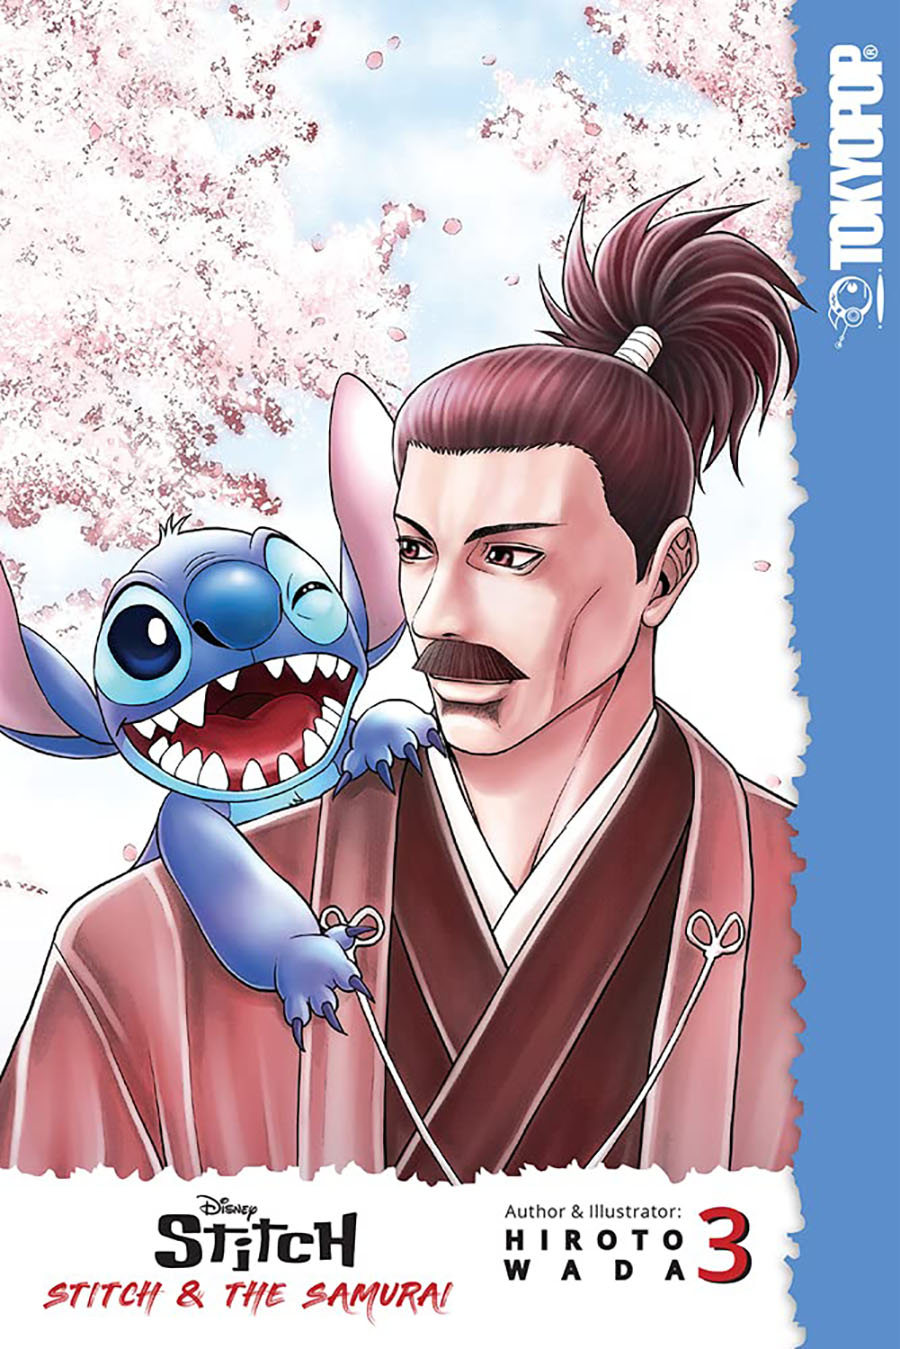 Disney Manga Stitch Stitch And The Samurai Vol 3 GN